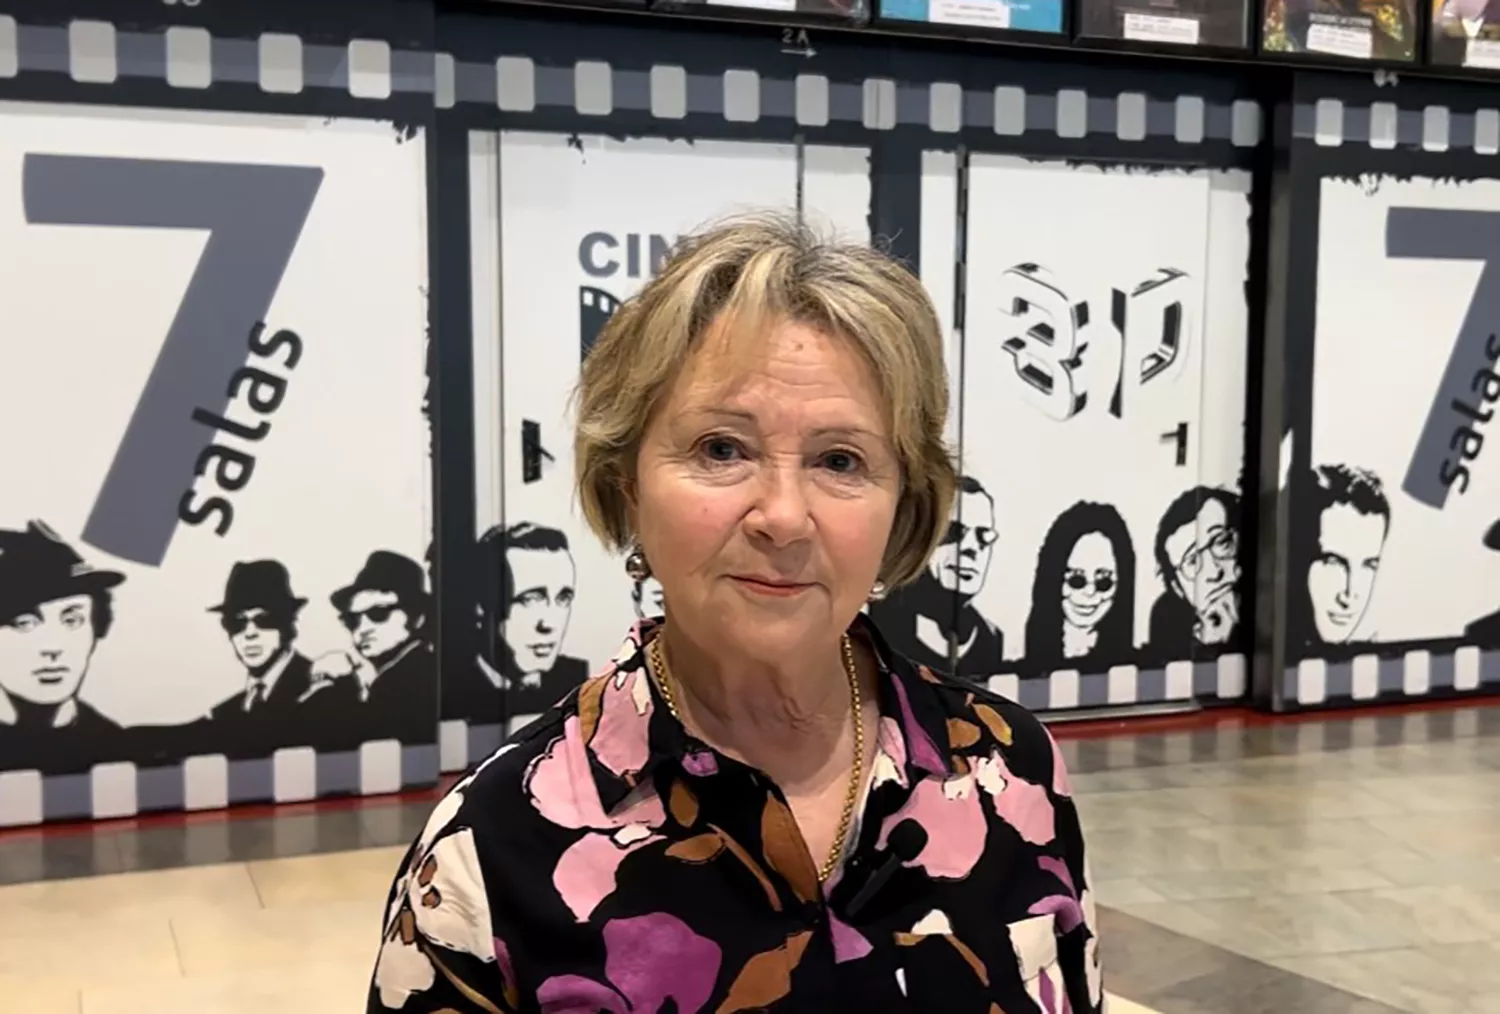 Vuelven 'Los jueves de cine' por 3 euros para los mayores de 60 años